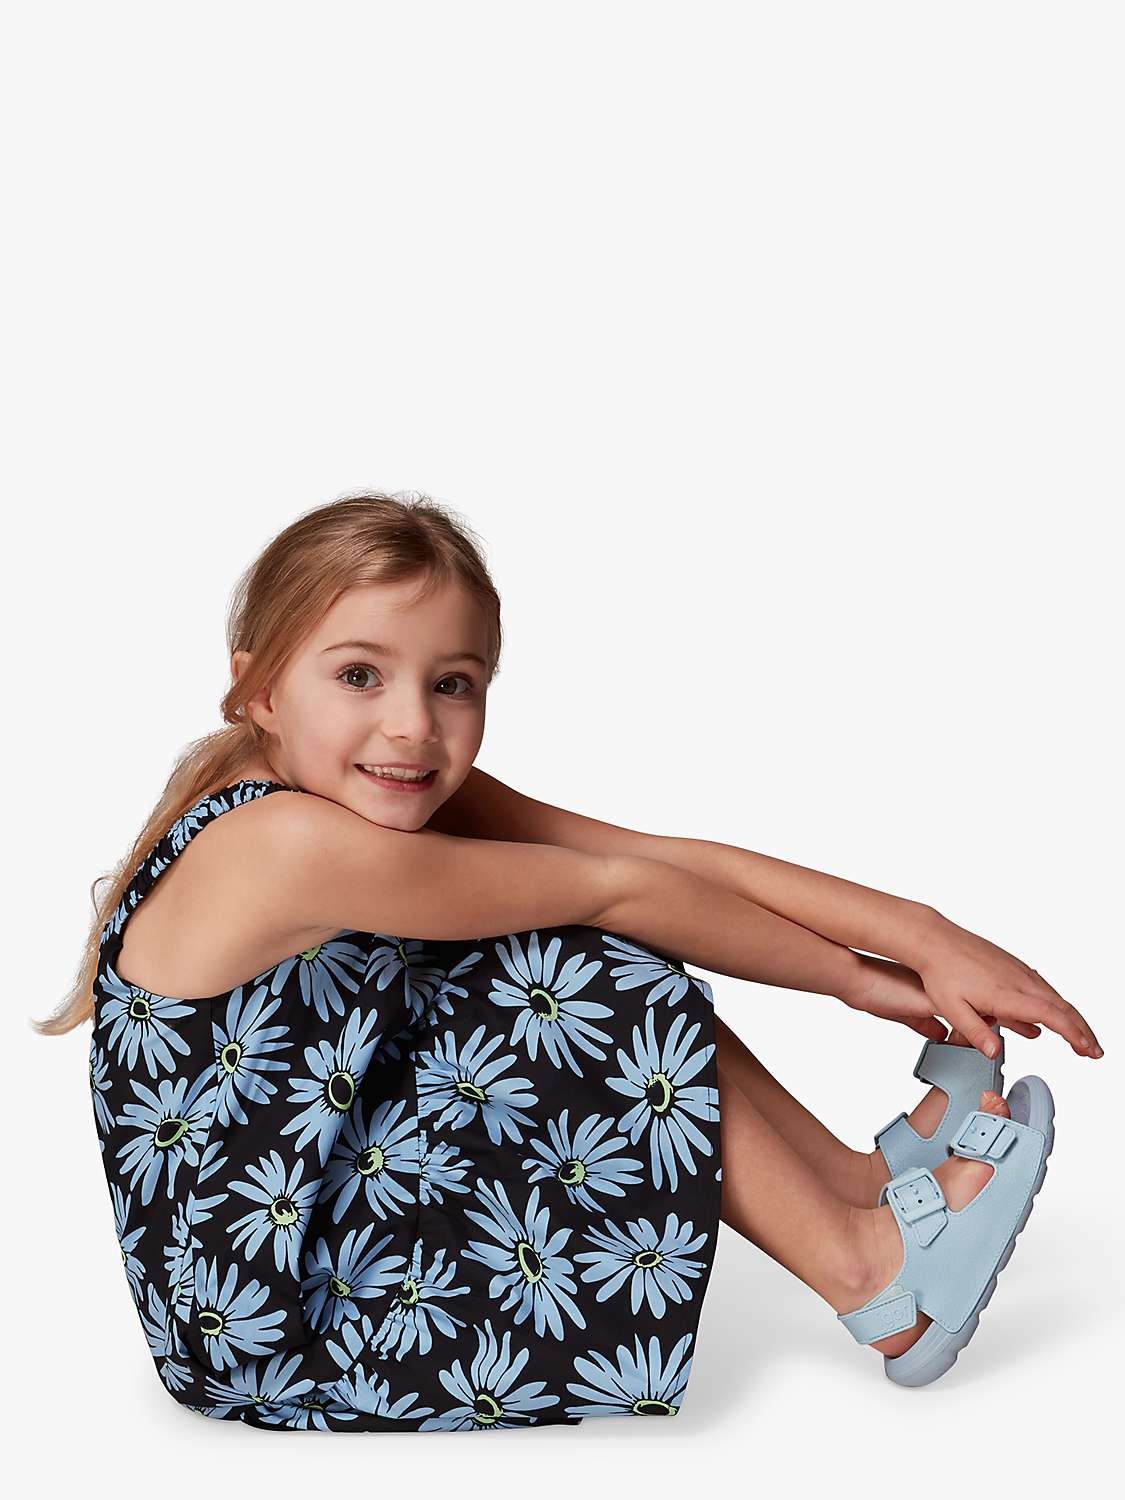 Buy Whistles Kids' Daisy Print Sundress, Blue/Multi Online at johnlewis.com